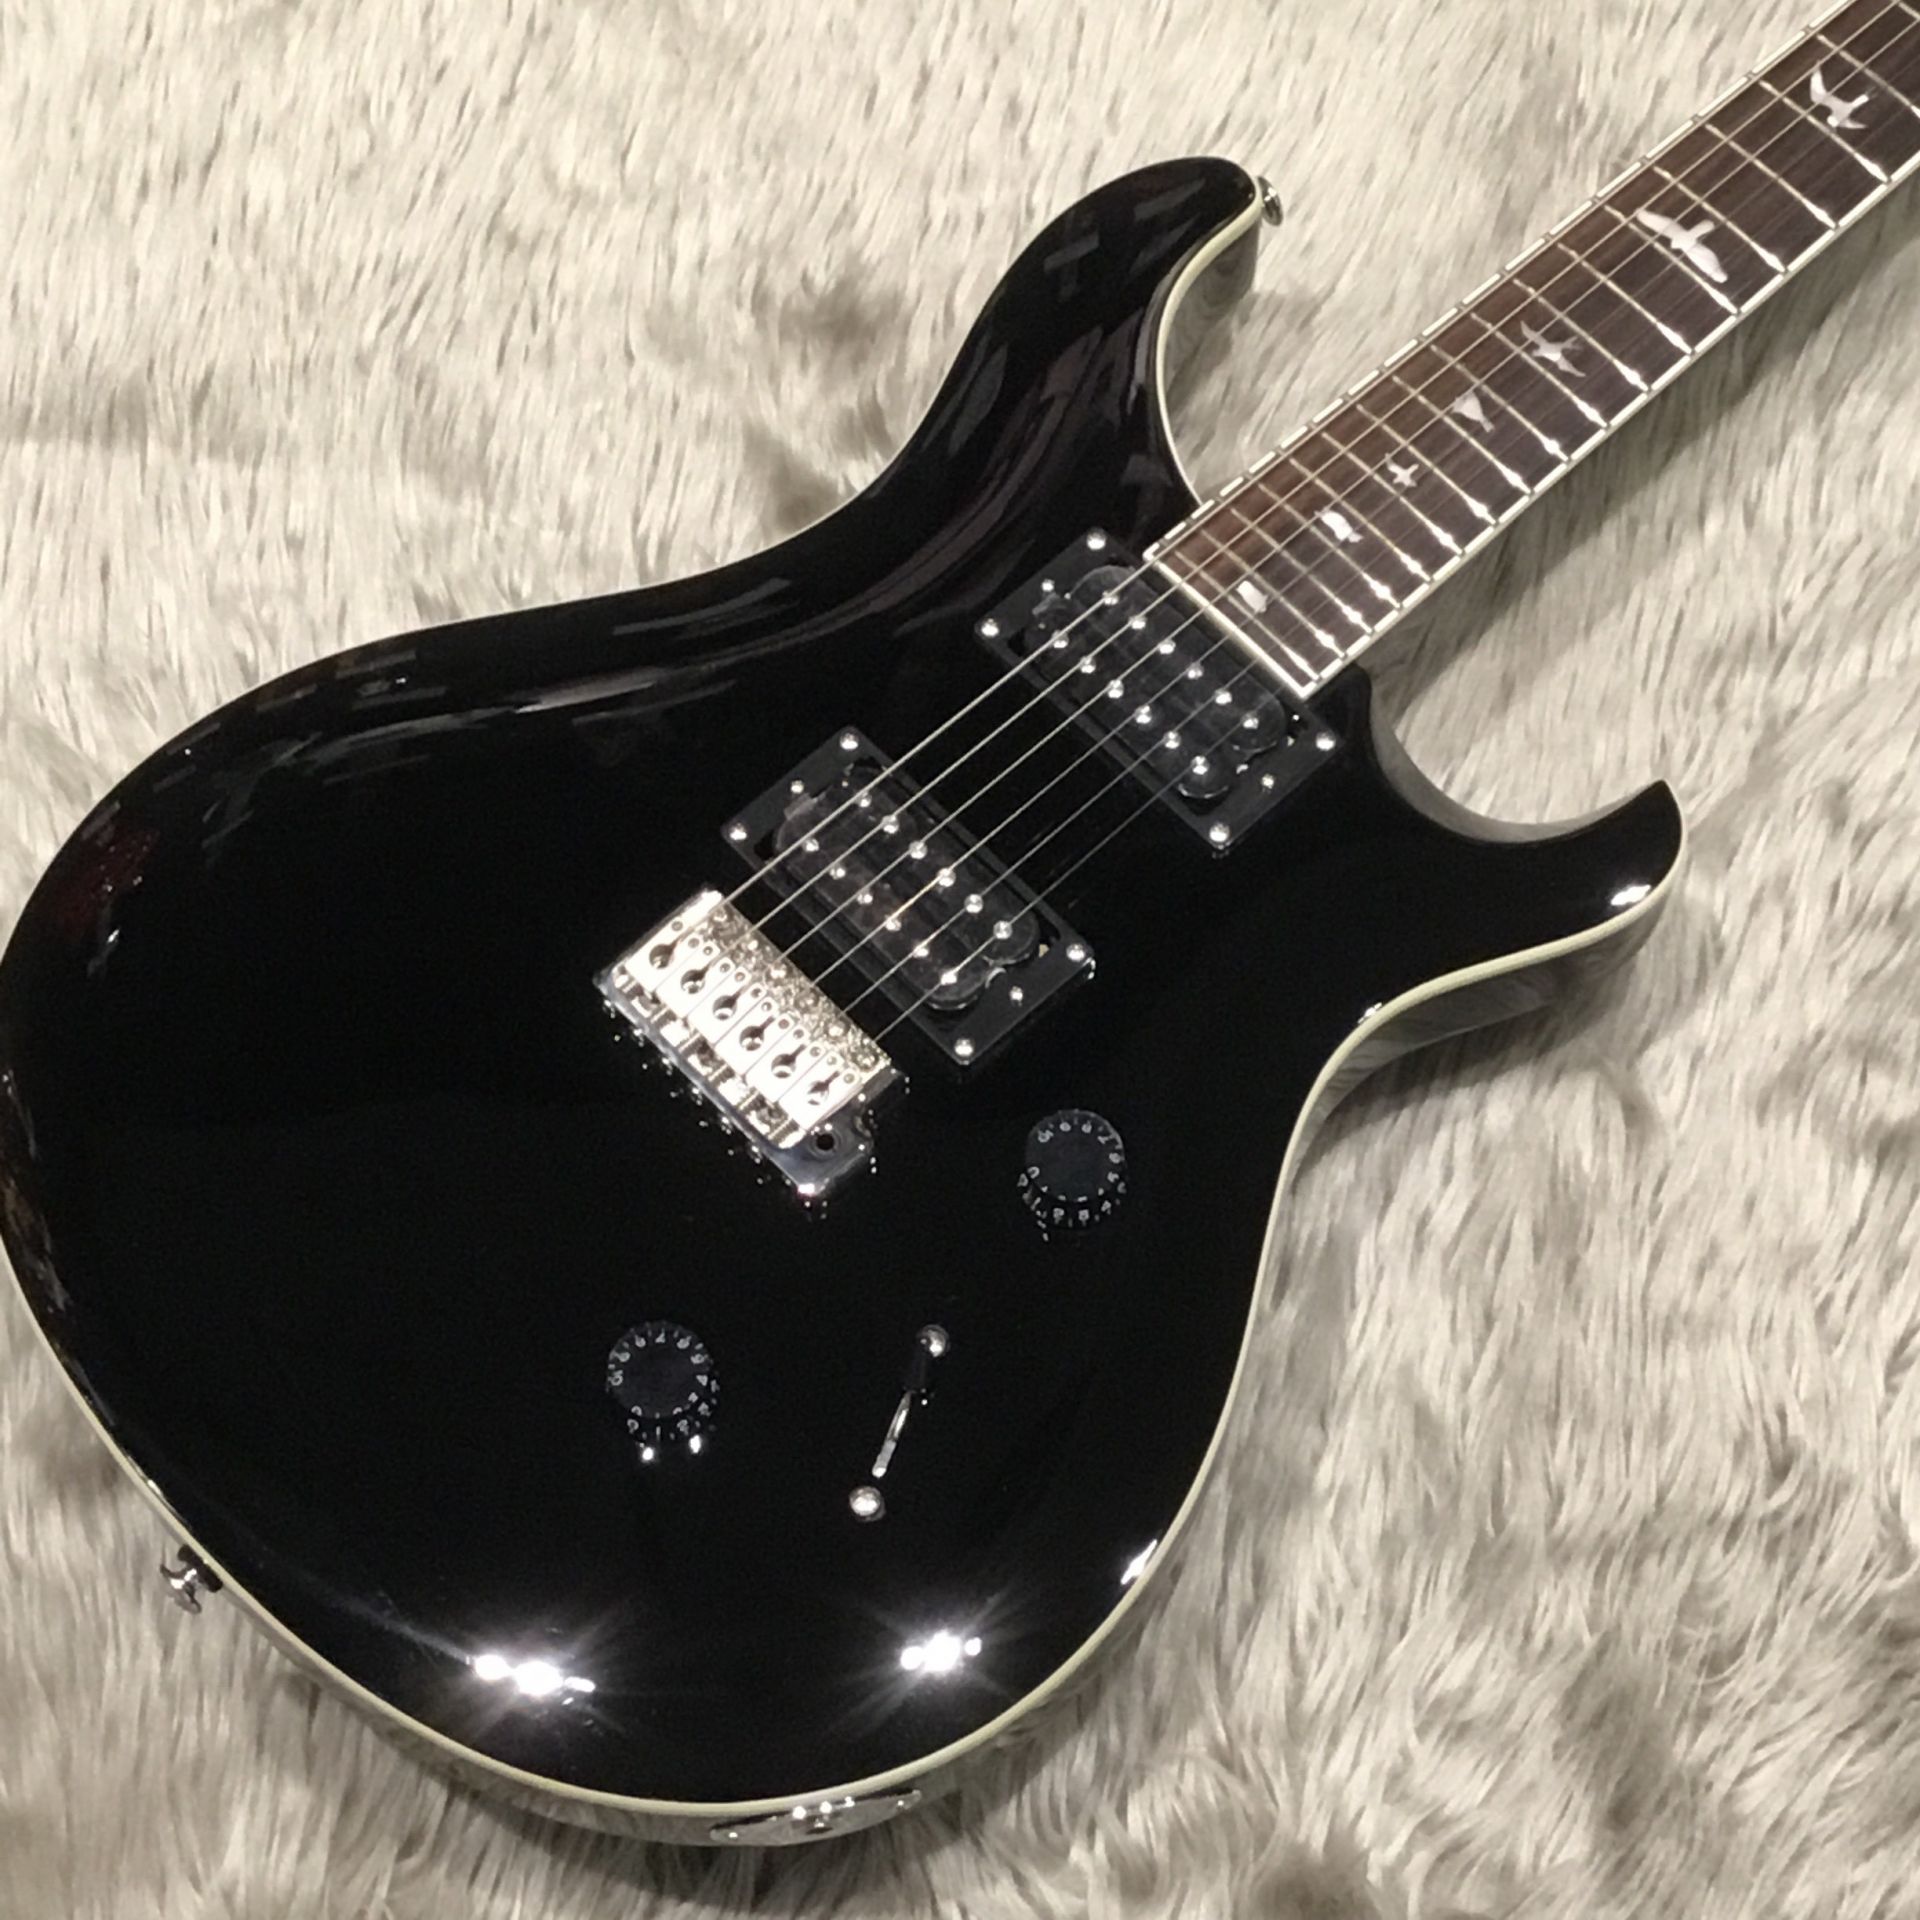 【新入荷情報】PAUL REED SMITH(PRS)エレキギター SEシリーズの限定品 ALL BLACK 入荷！